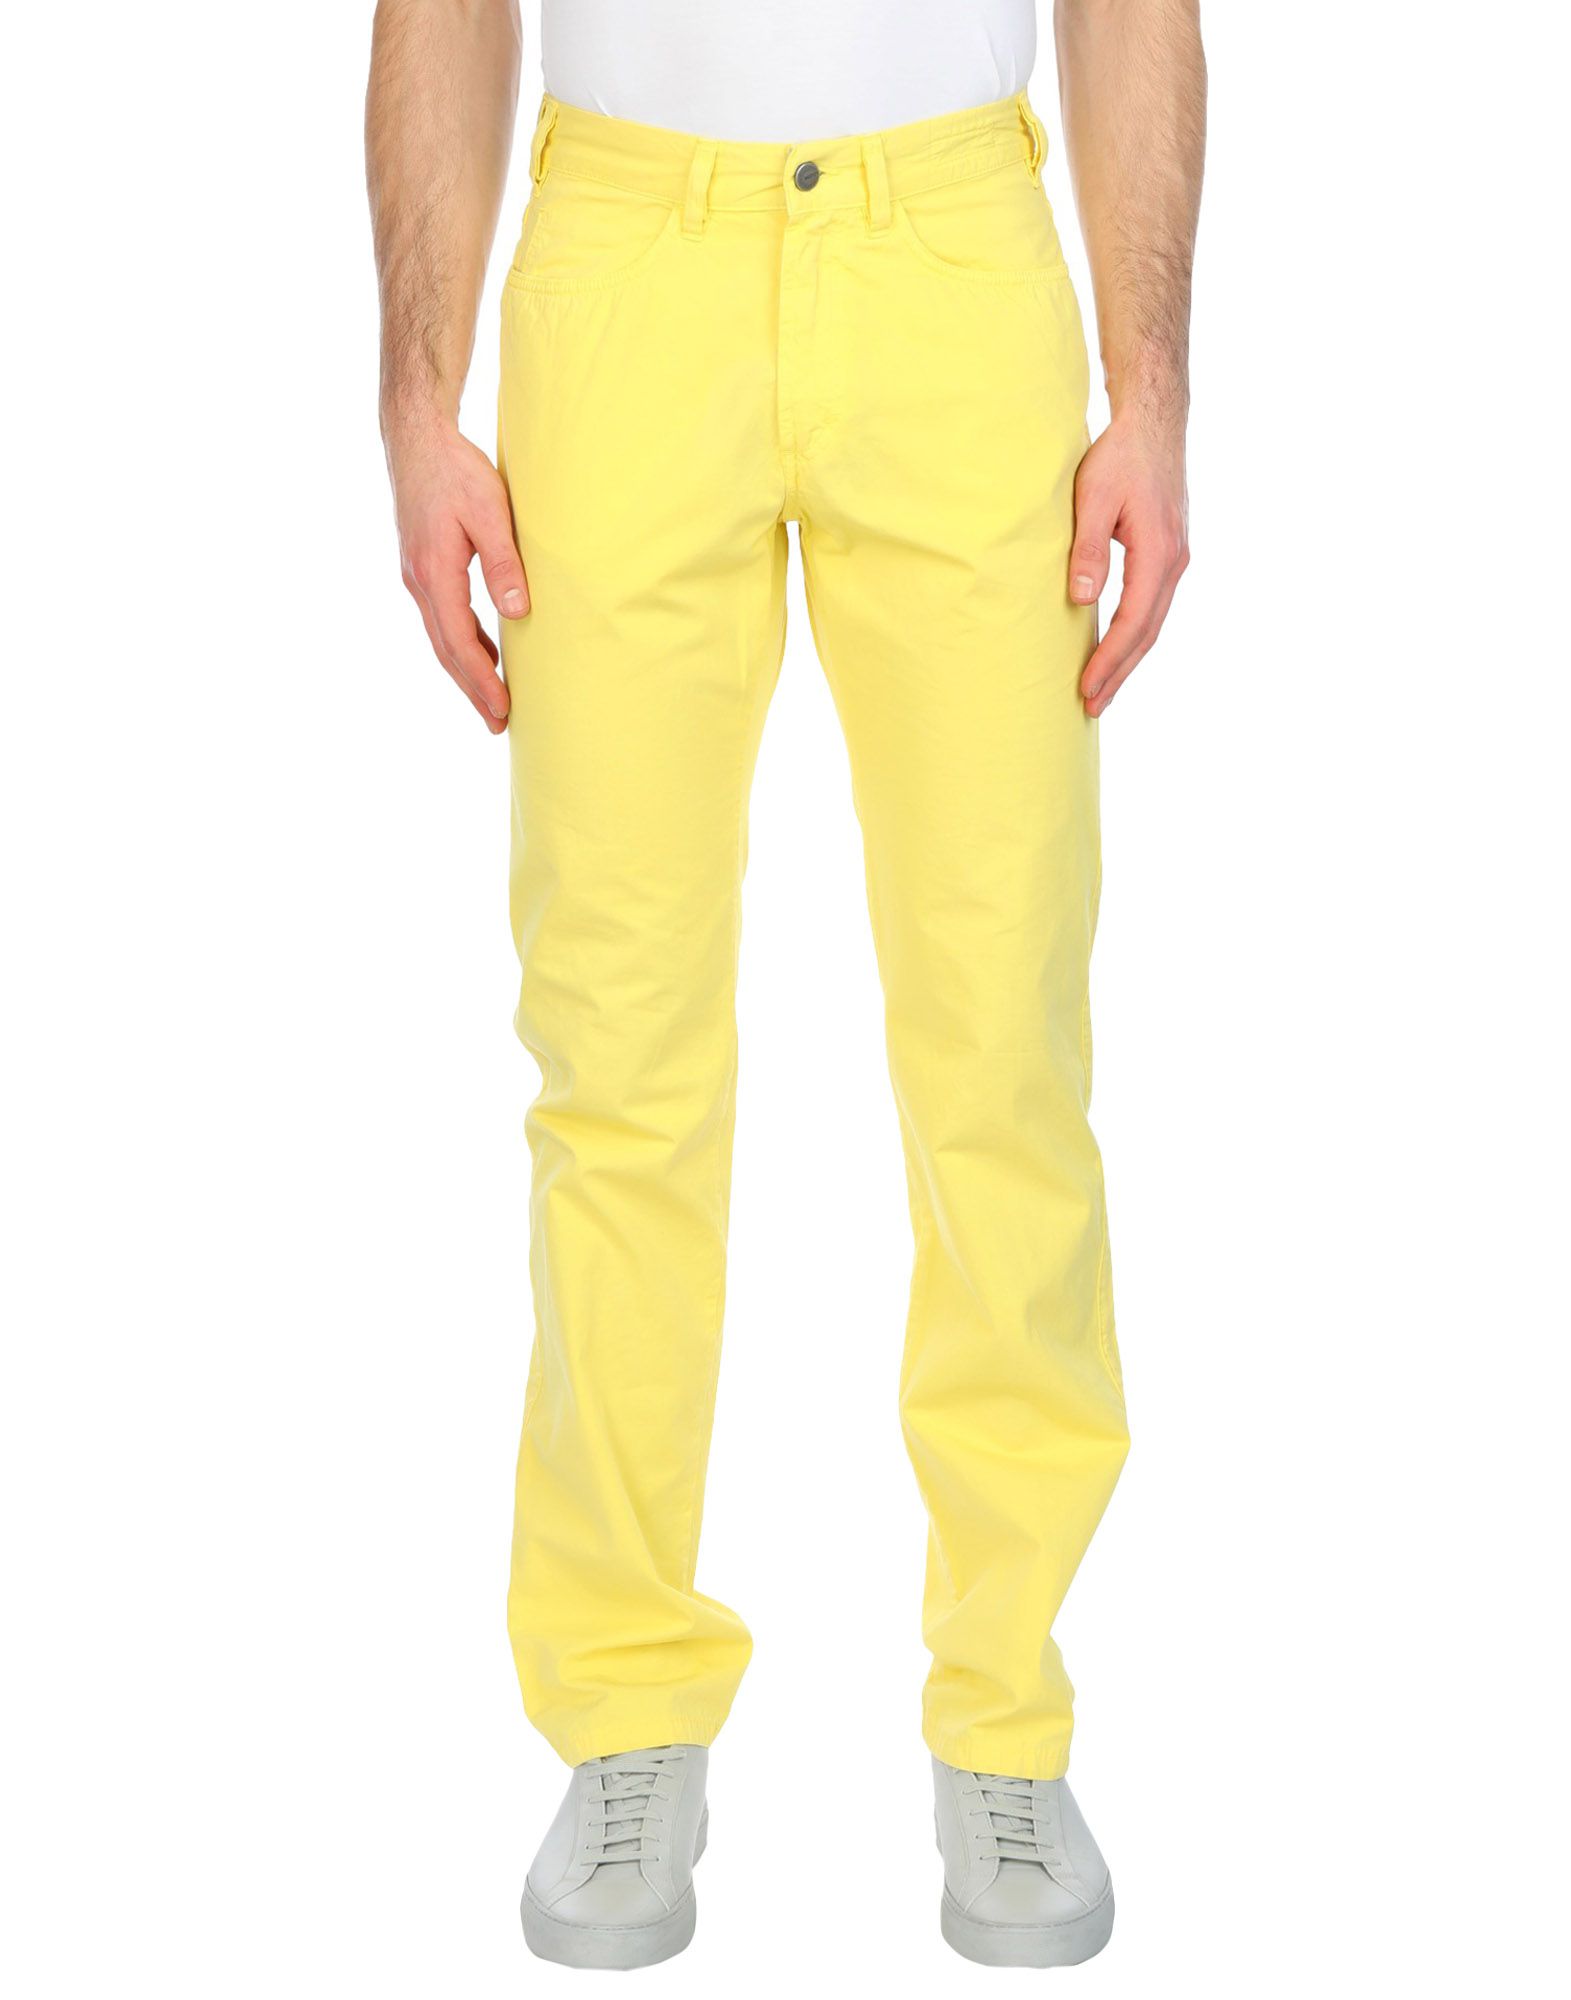 黄色を効かせるコーデで脱マンネリ メンズ イエローの着こなし方 Fashion Spider